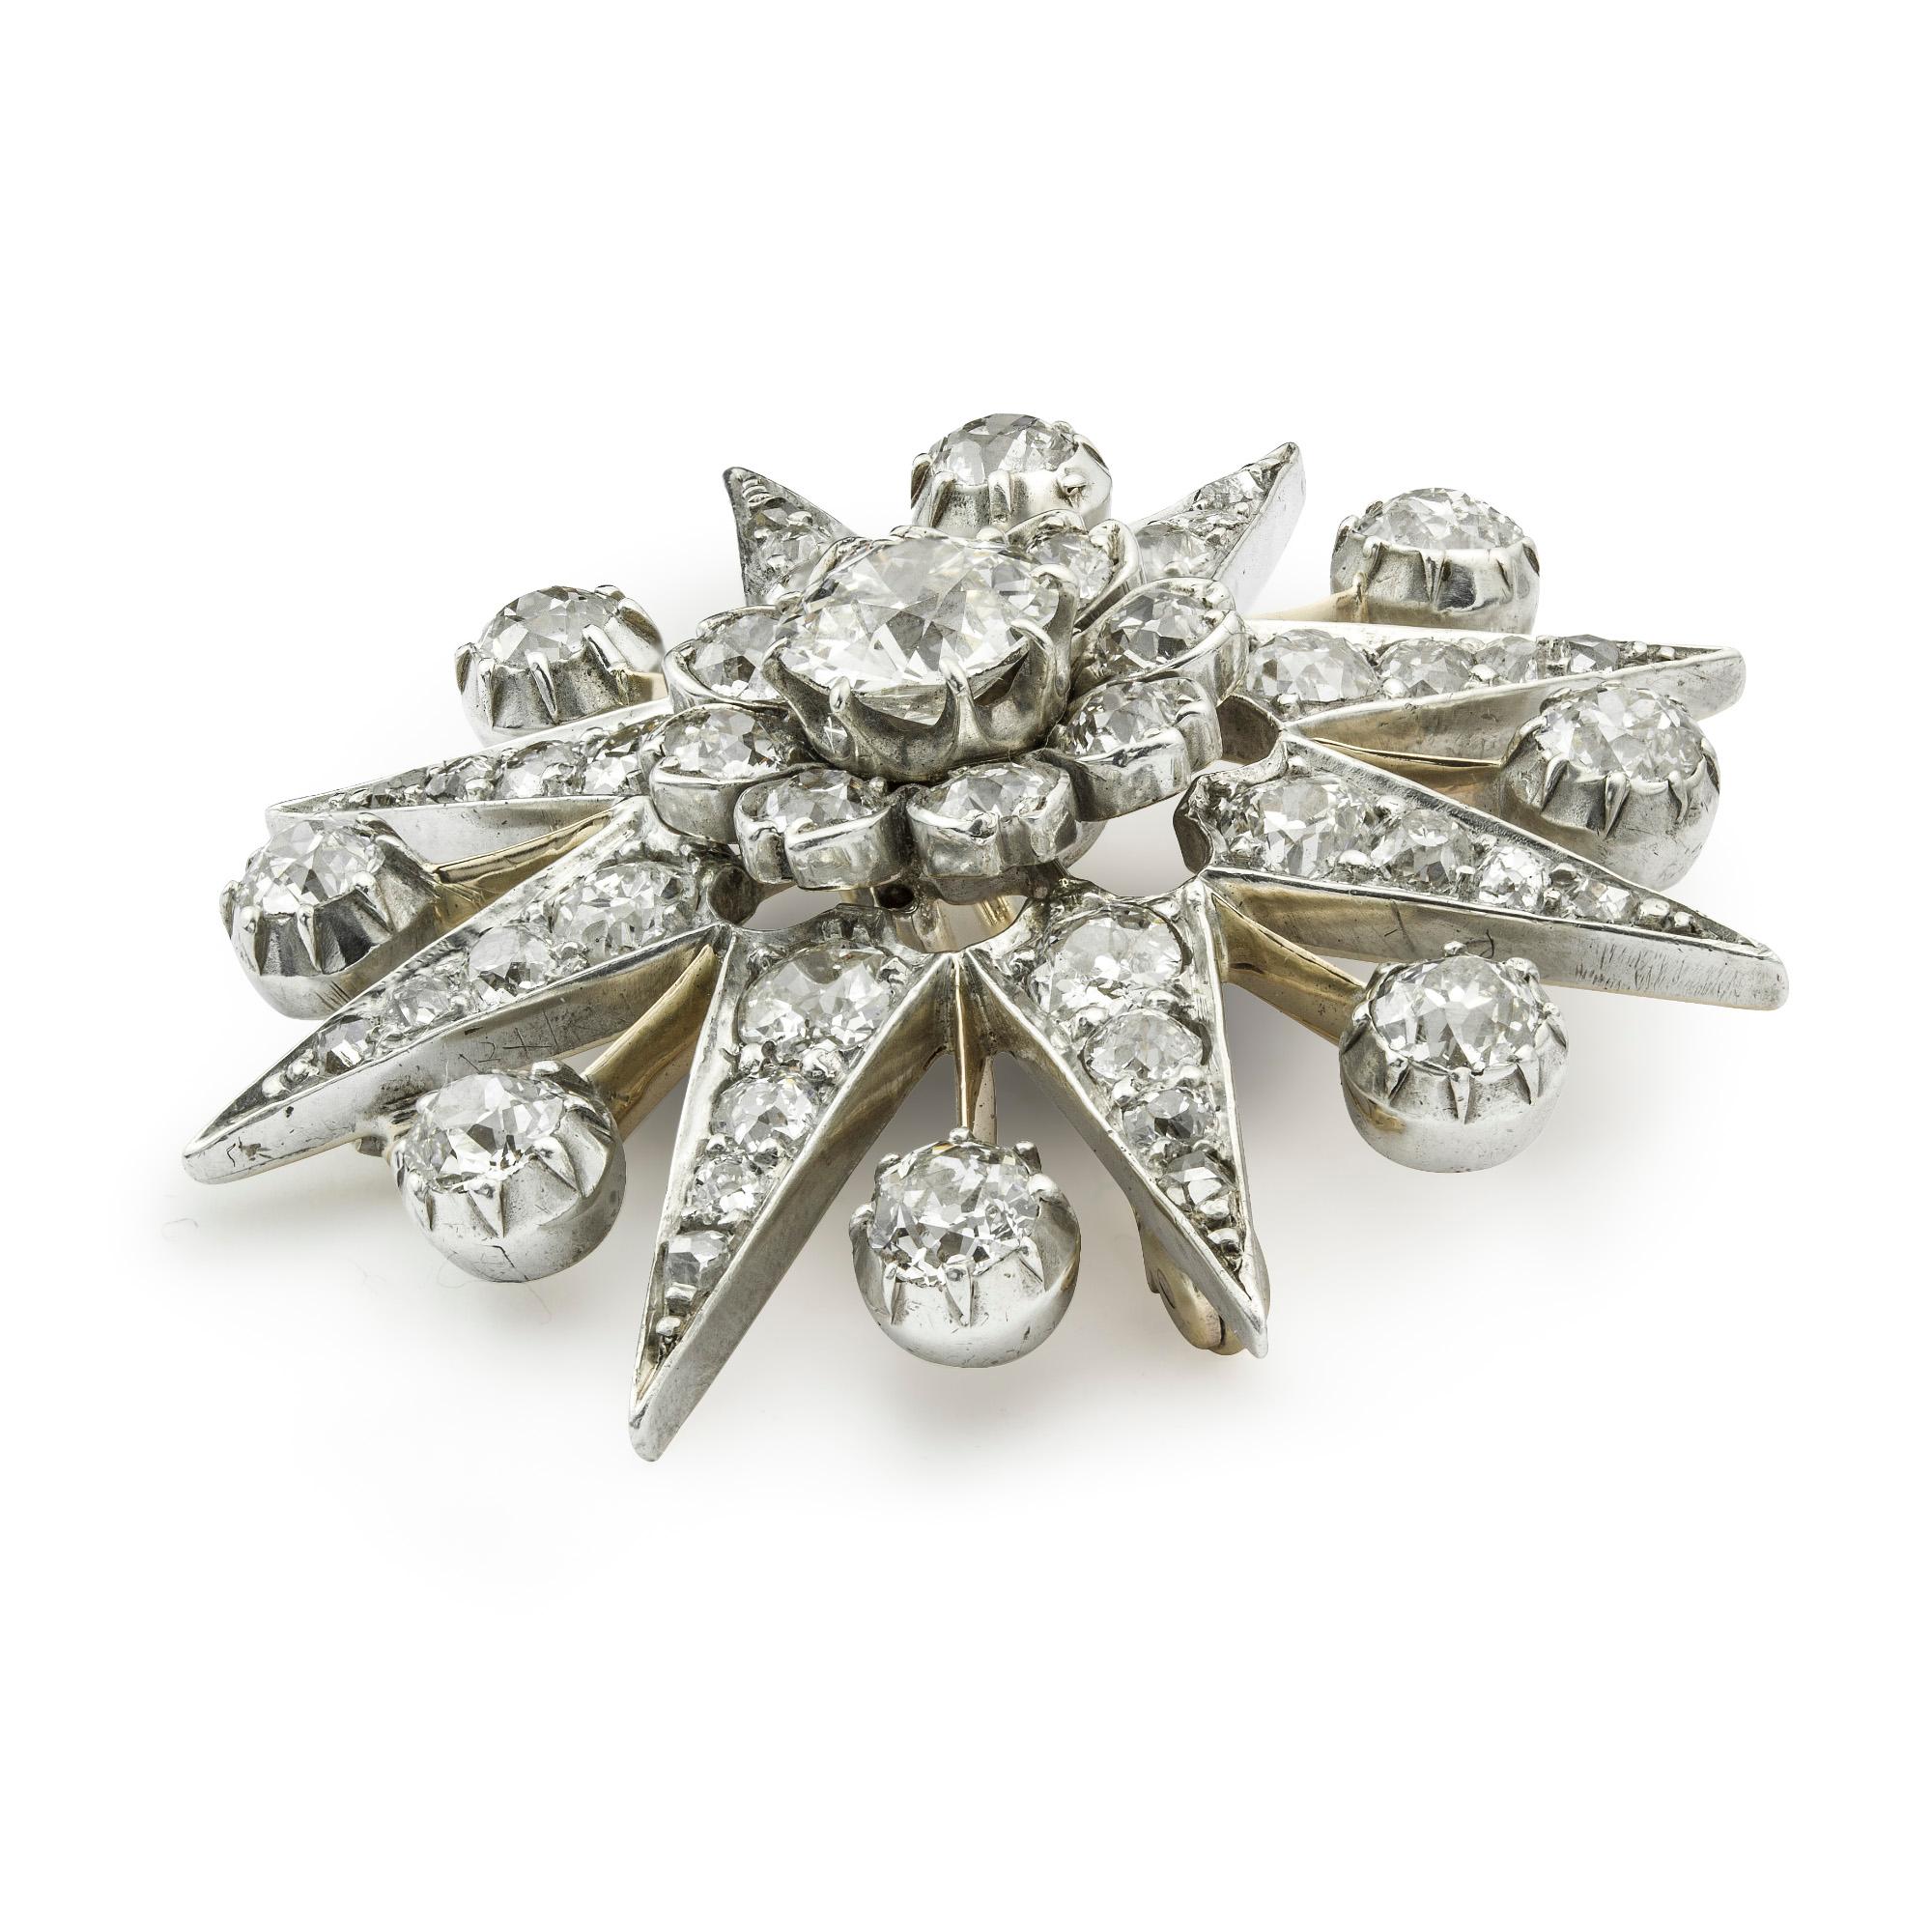 Eine viktorianische diamantbesetzte Sternbrosche, in der Mitte ein Diamant im alten europäischen Schliff mit einem geschätzten Gewicht von 1,5 Karat, umgeben von  acht Diamanten im Altschliff in Form einer Blumengruppe in einem diamantbesetzten